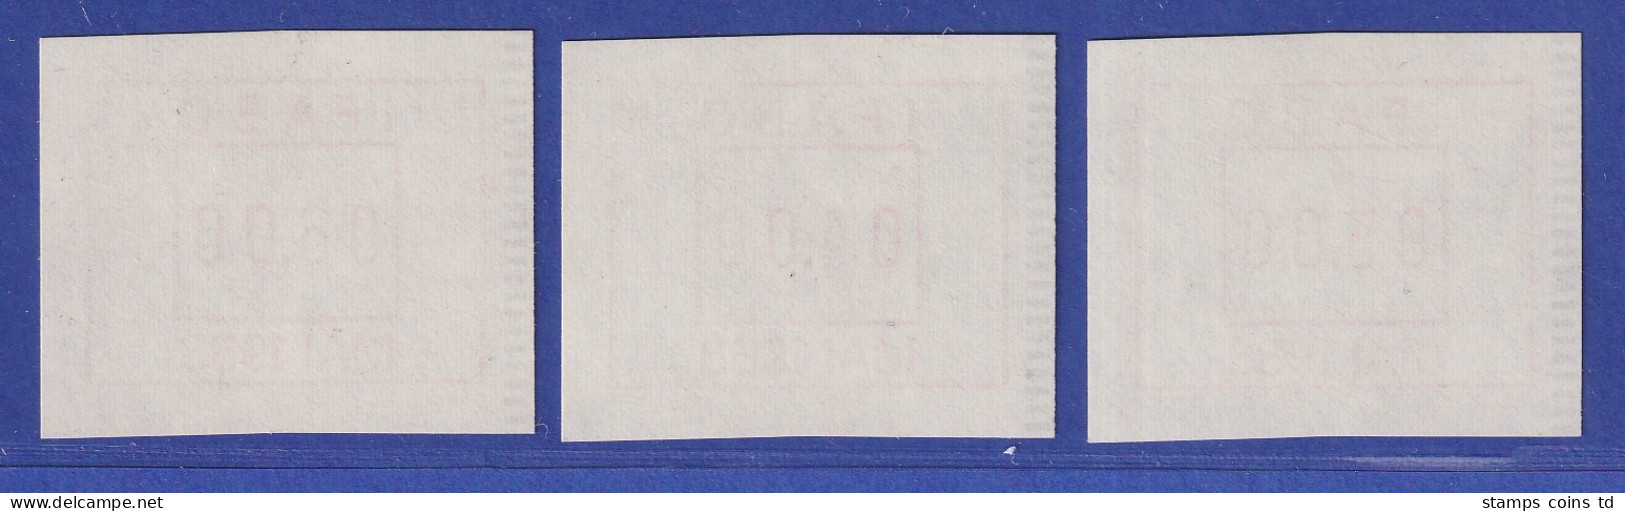 Österreich FRAMA-ATM Vorführdruck IFABO MAI 1983 Als Satz !!! 3.00-4.00-6.00 **  - Vignette [ATM]